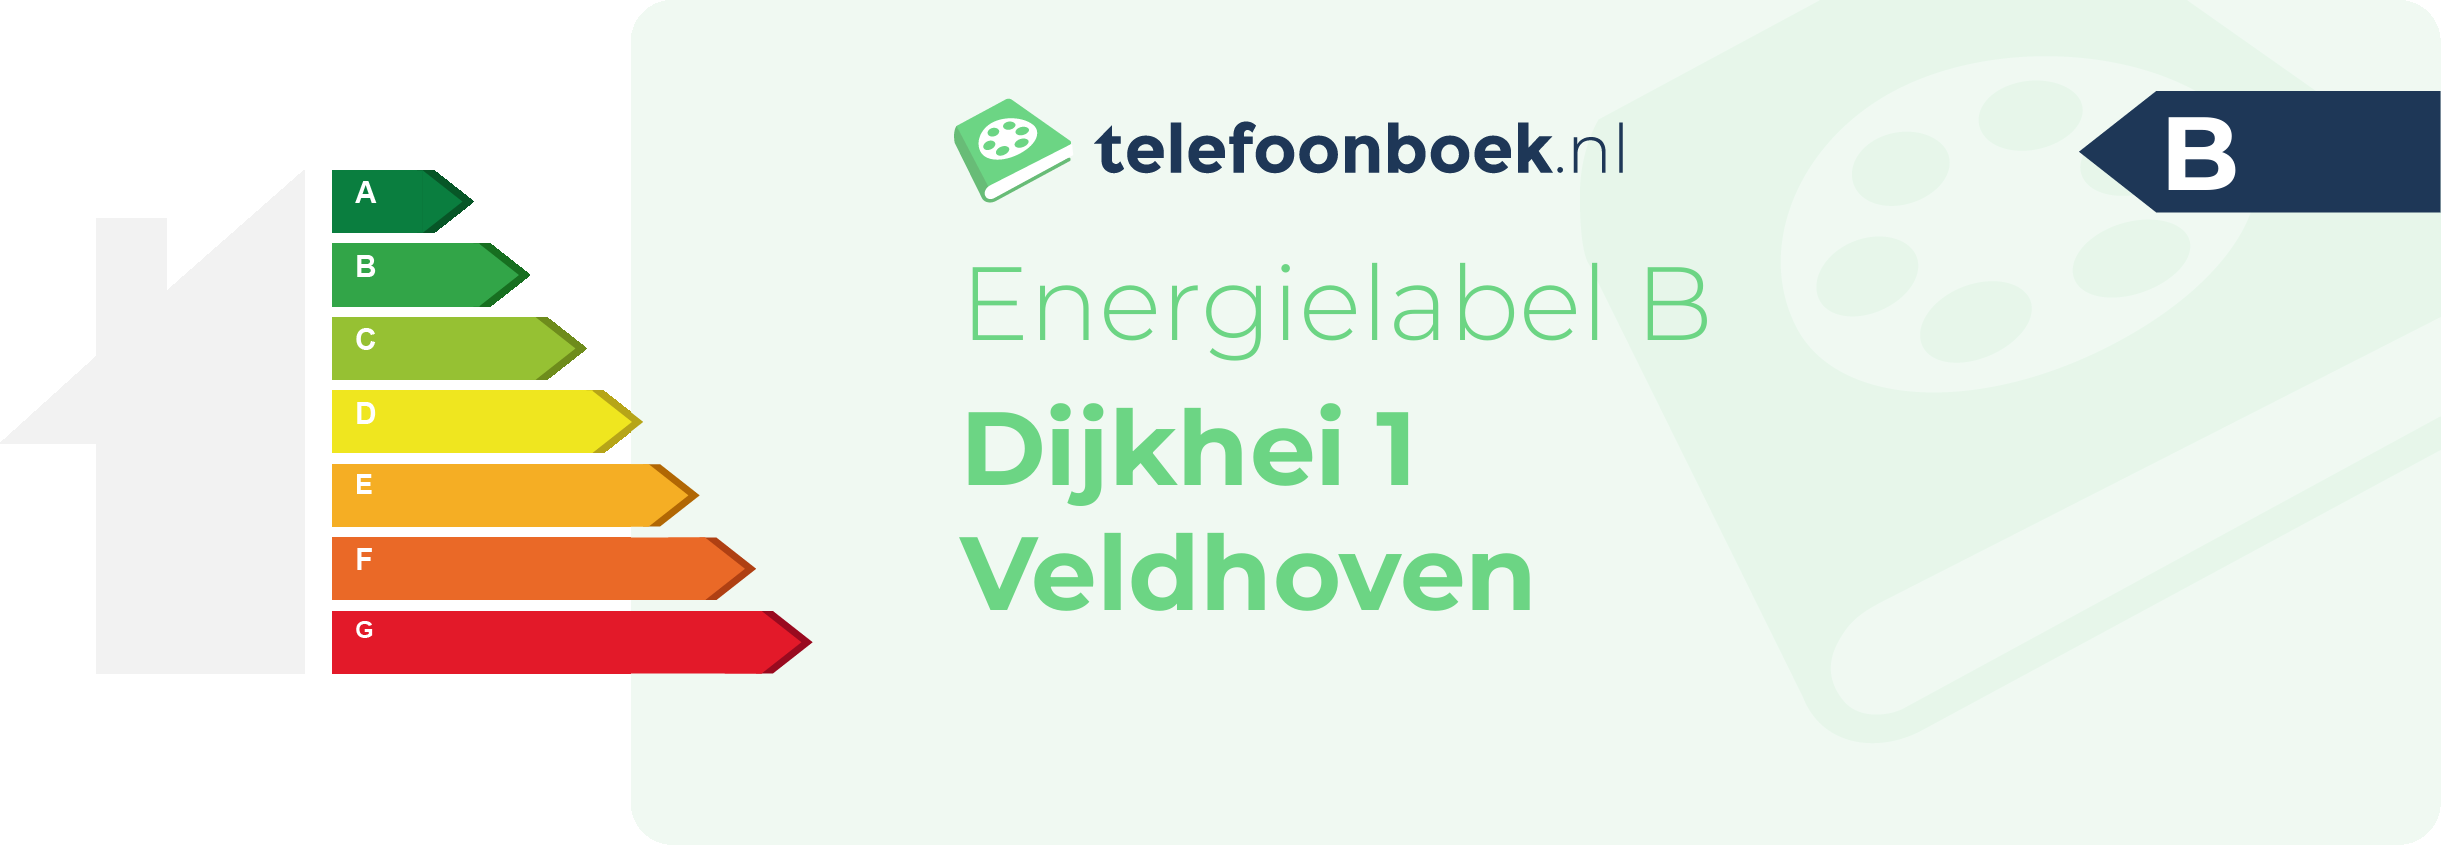 Energielabel Dijkhei 1 Veldhoven